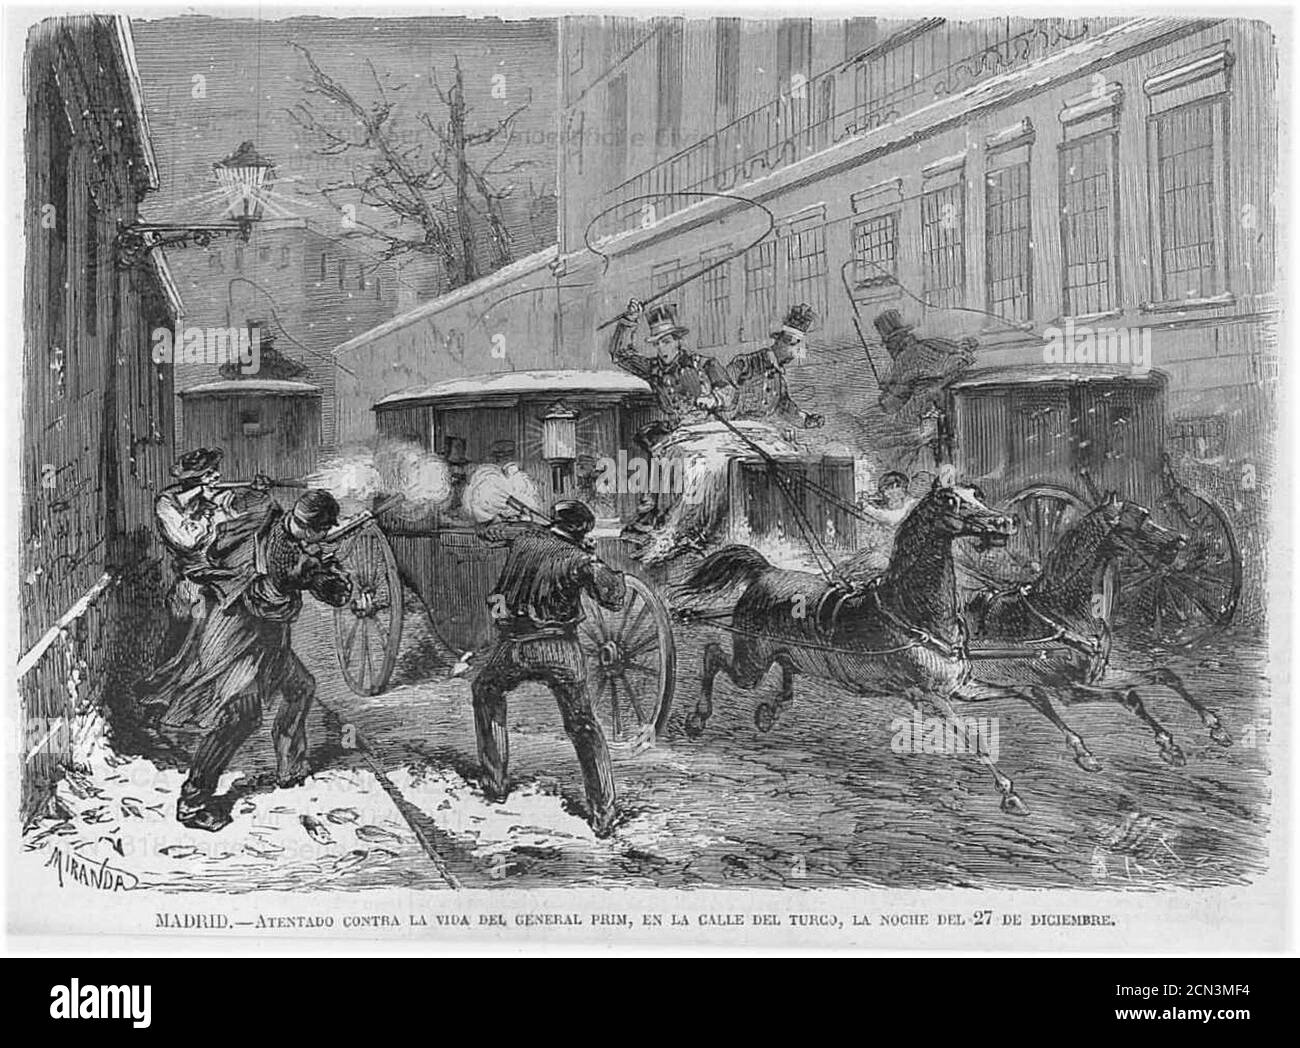 Juan-Prim-atentado-1871. Stock Photo